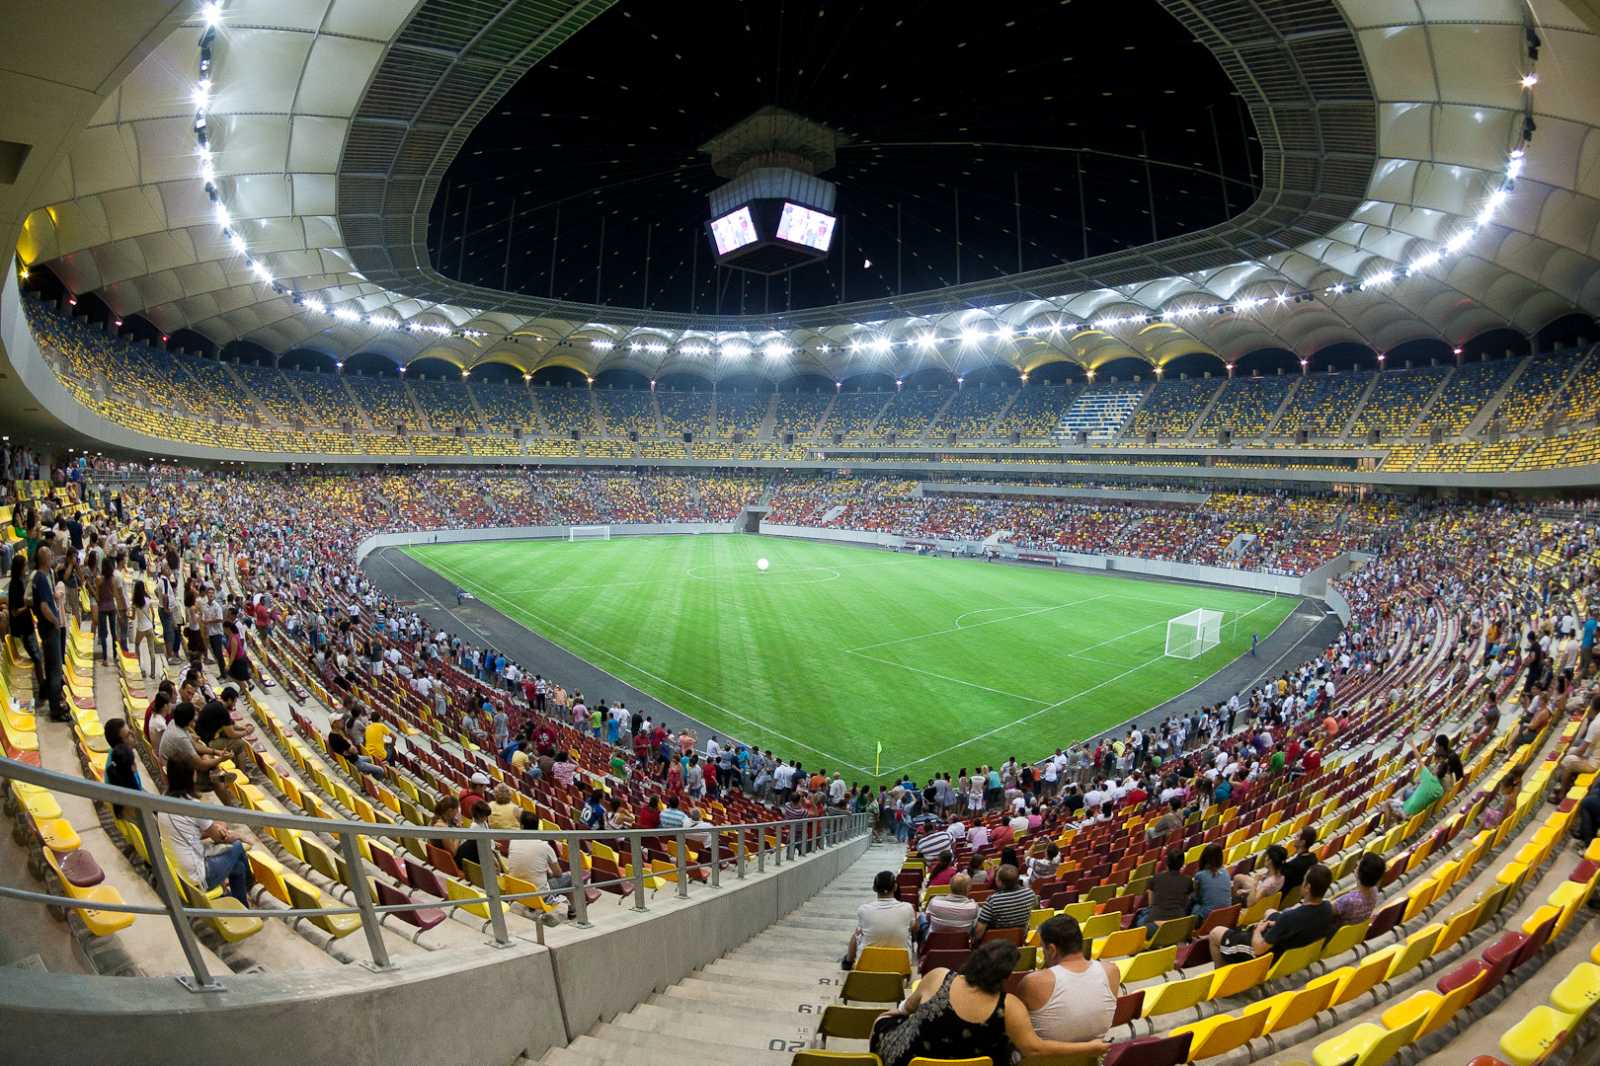 A Nemzeti Arénában 13 ezer nézőt engednek be az Eb  mérkőzéseire | Fotó: Facebook/Arena Nationala